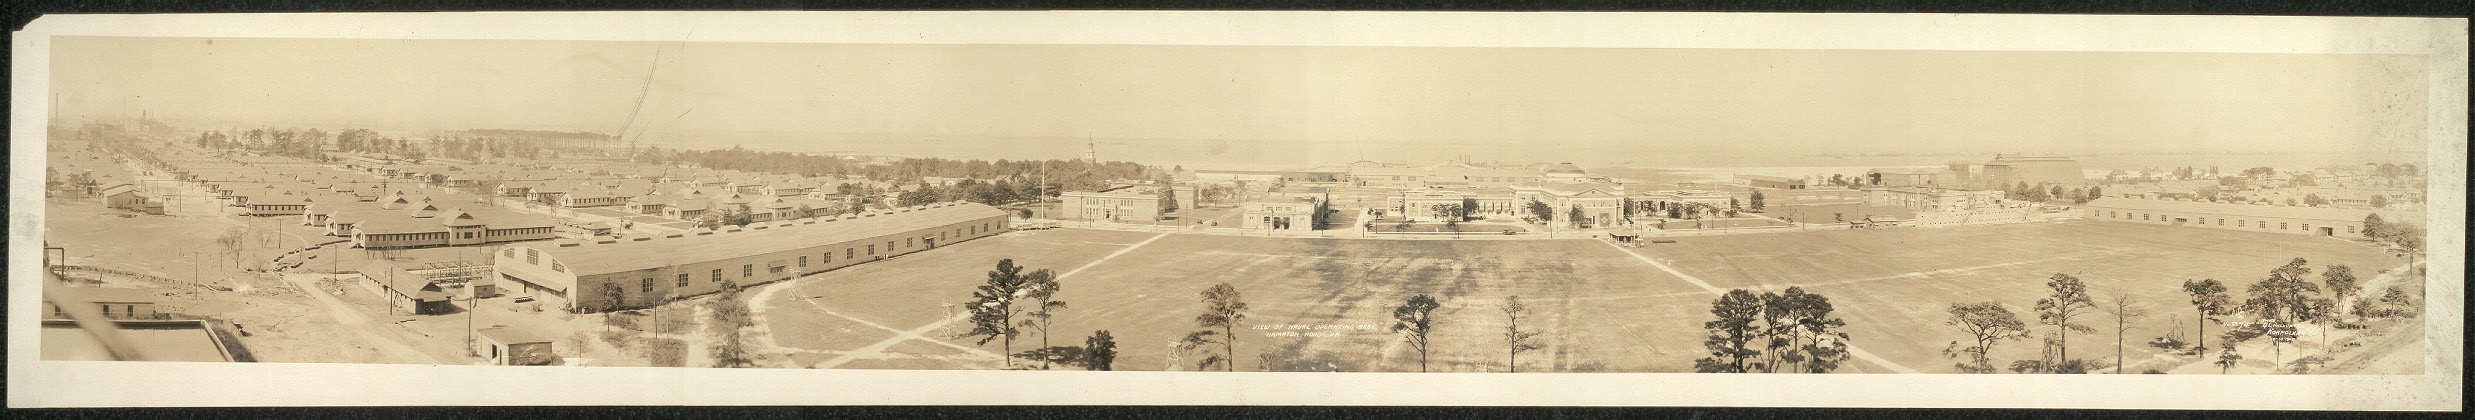 View of Naval Operating Base, Hampton Roads, Va.